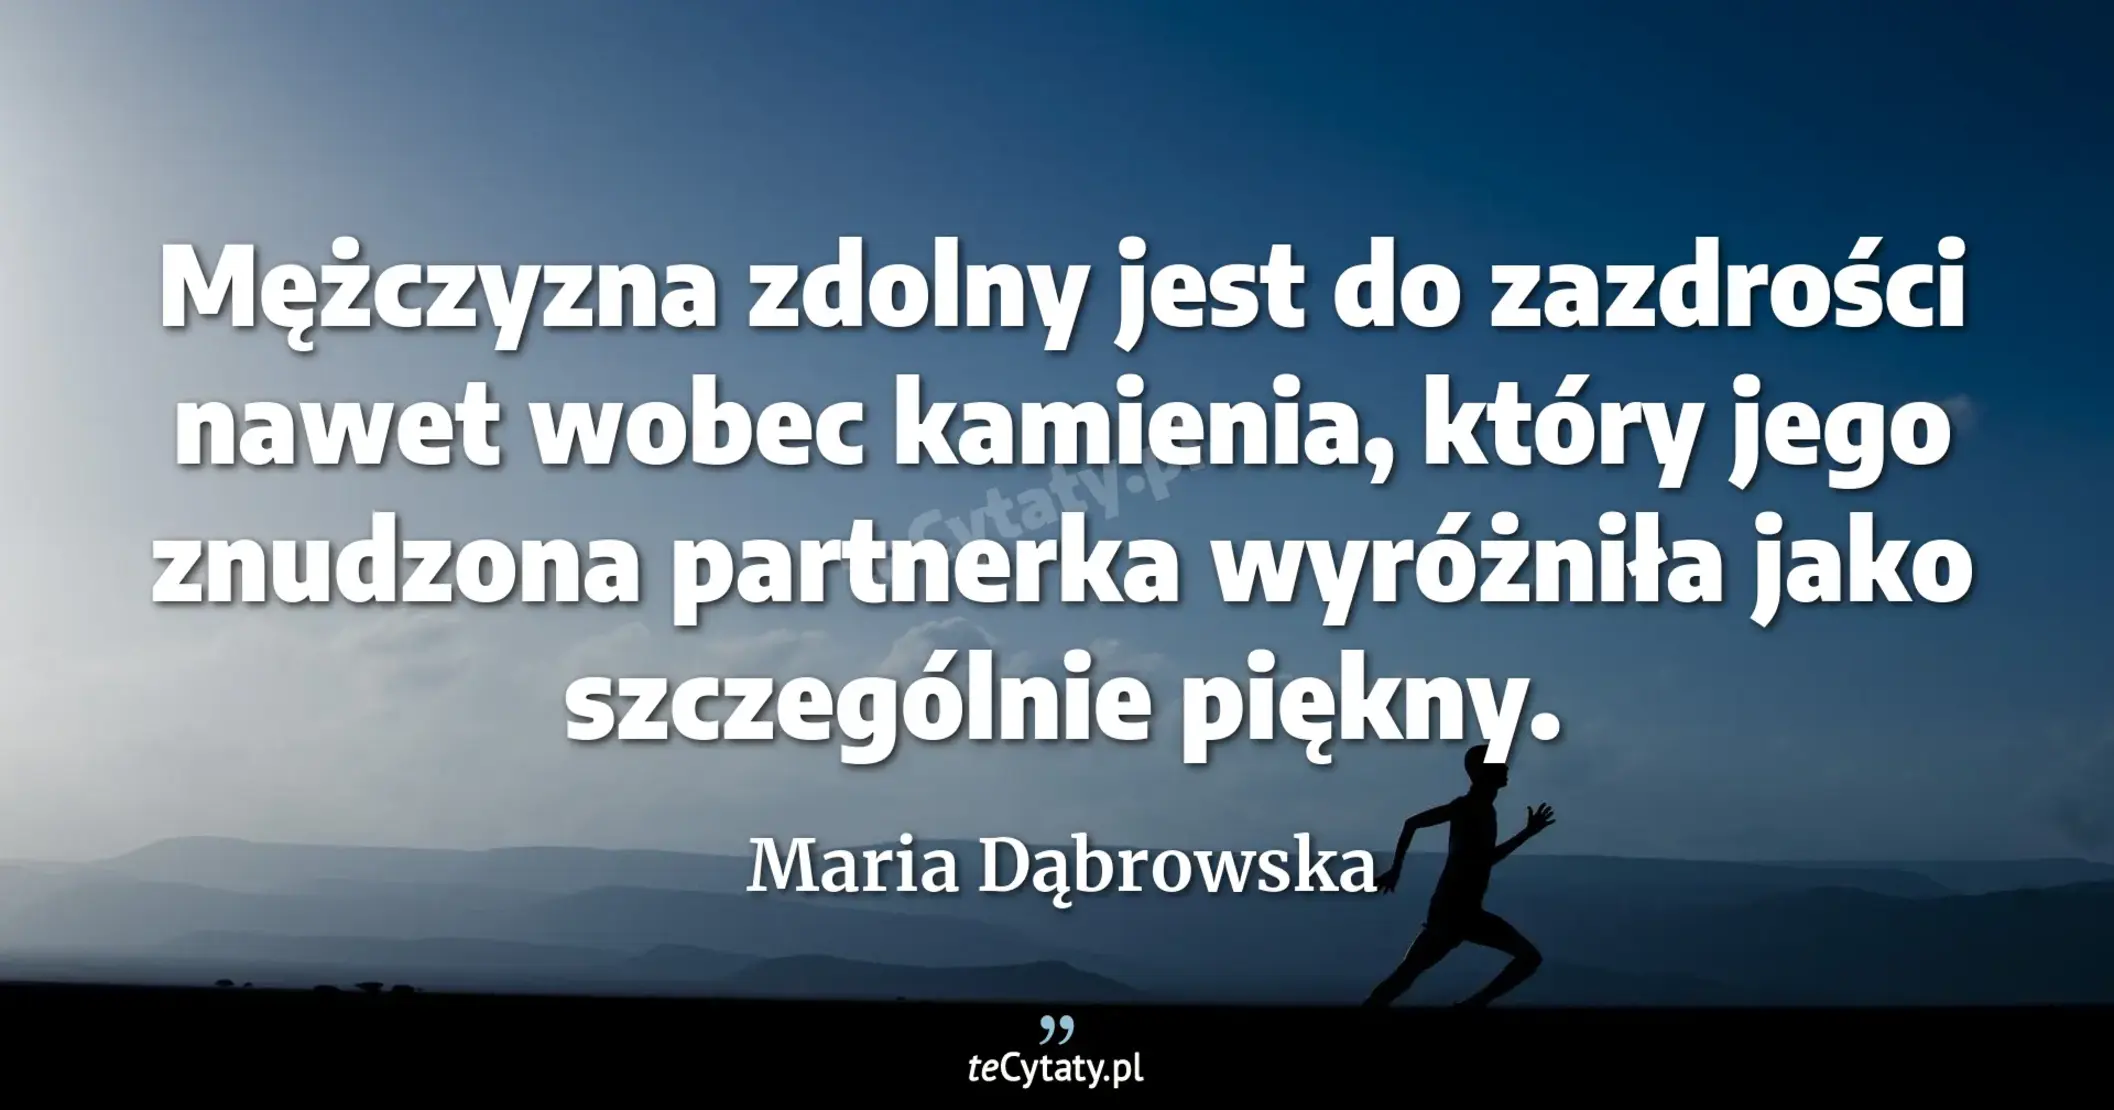 Mężczyzna zdolny jest do zazdrości nawet wobec kamienia, który jego znudzona partnerka wyróżniła jako szczególnie piękny. - Maria Dąbrowska